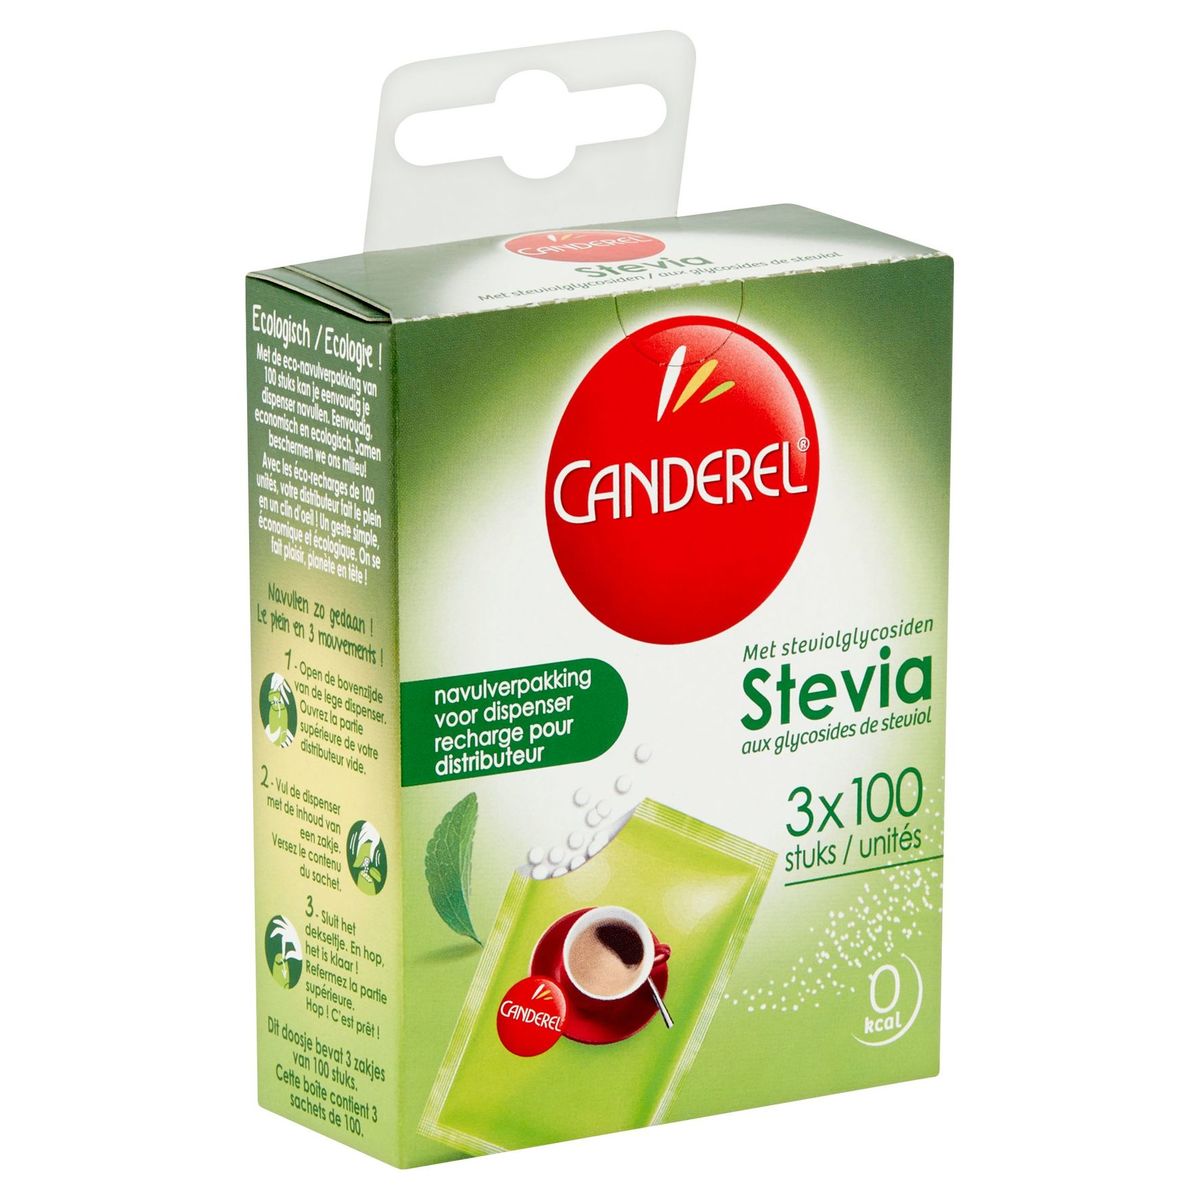 Canderel Stevia met Steviolglycosiden 3 x 100 Stuks 25.5 g